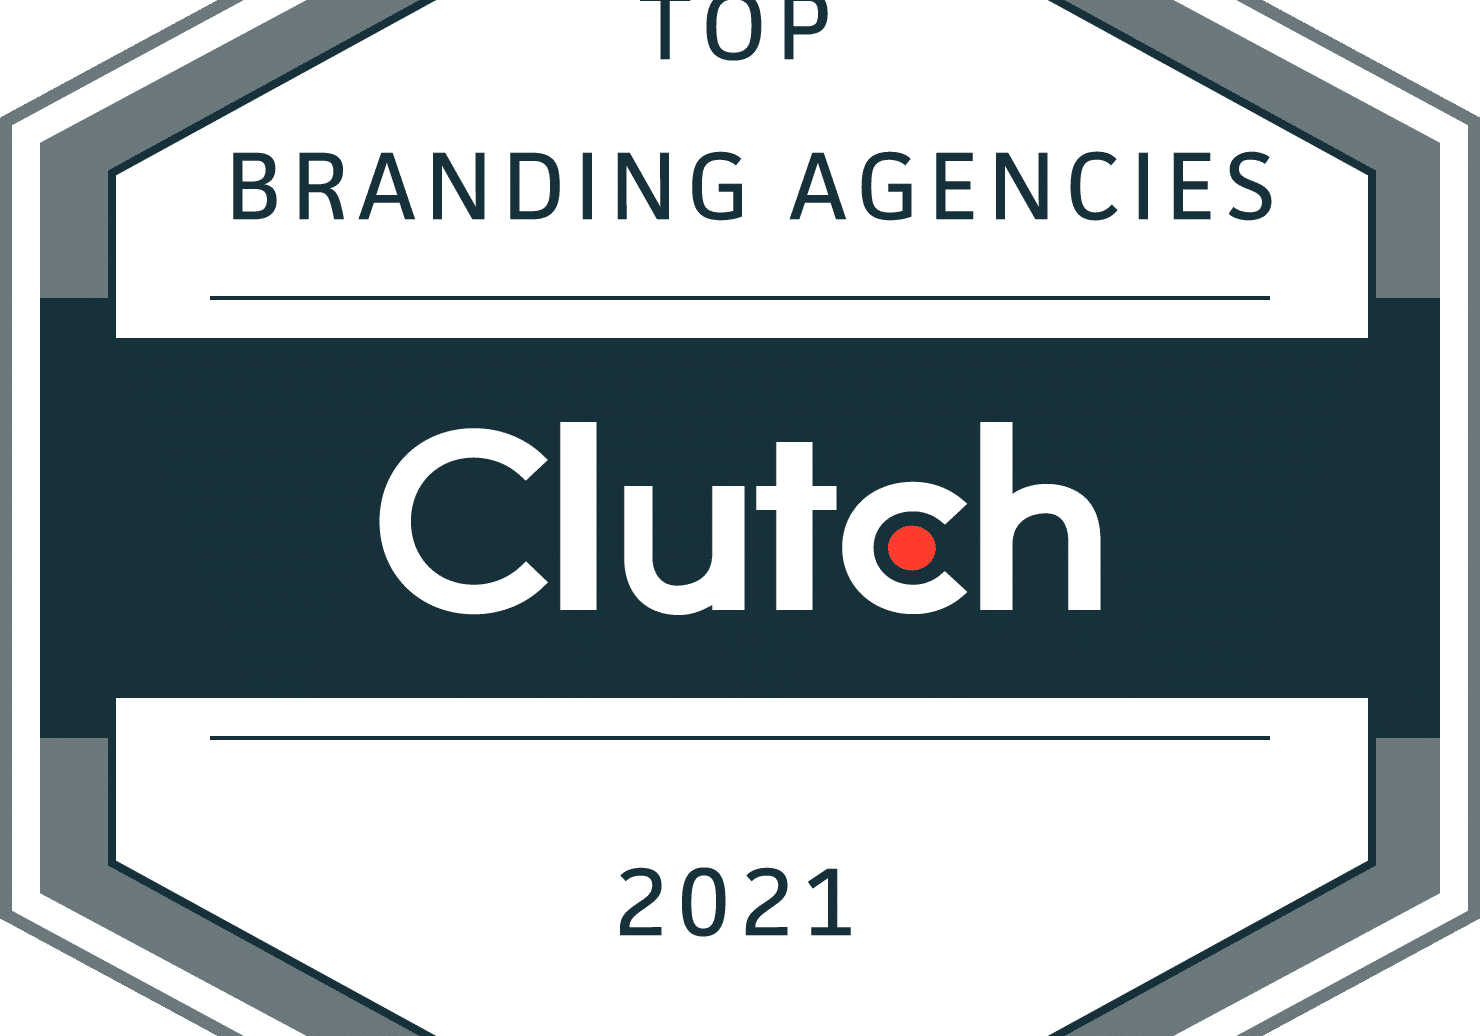 Clutch_Top_Branding_Agencies_2021